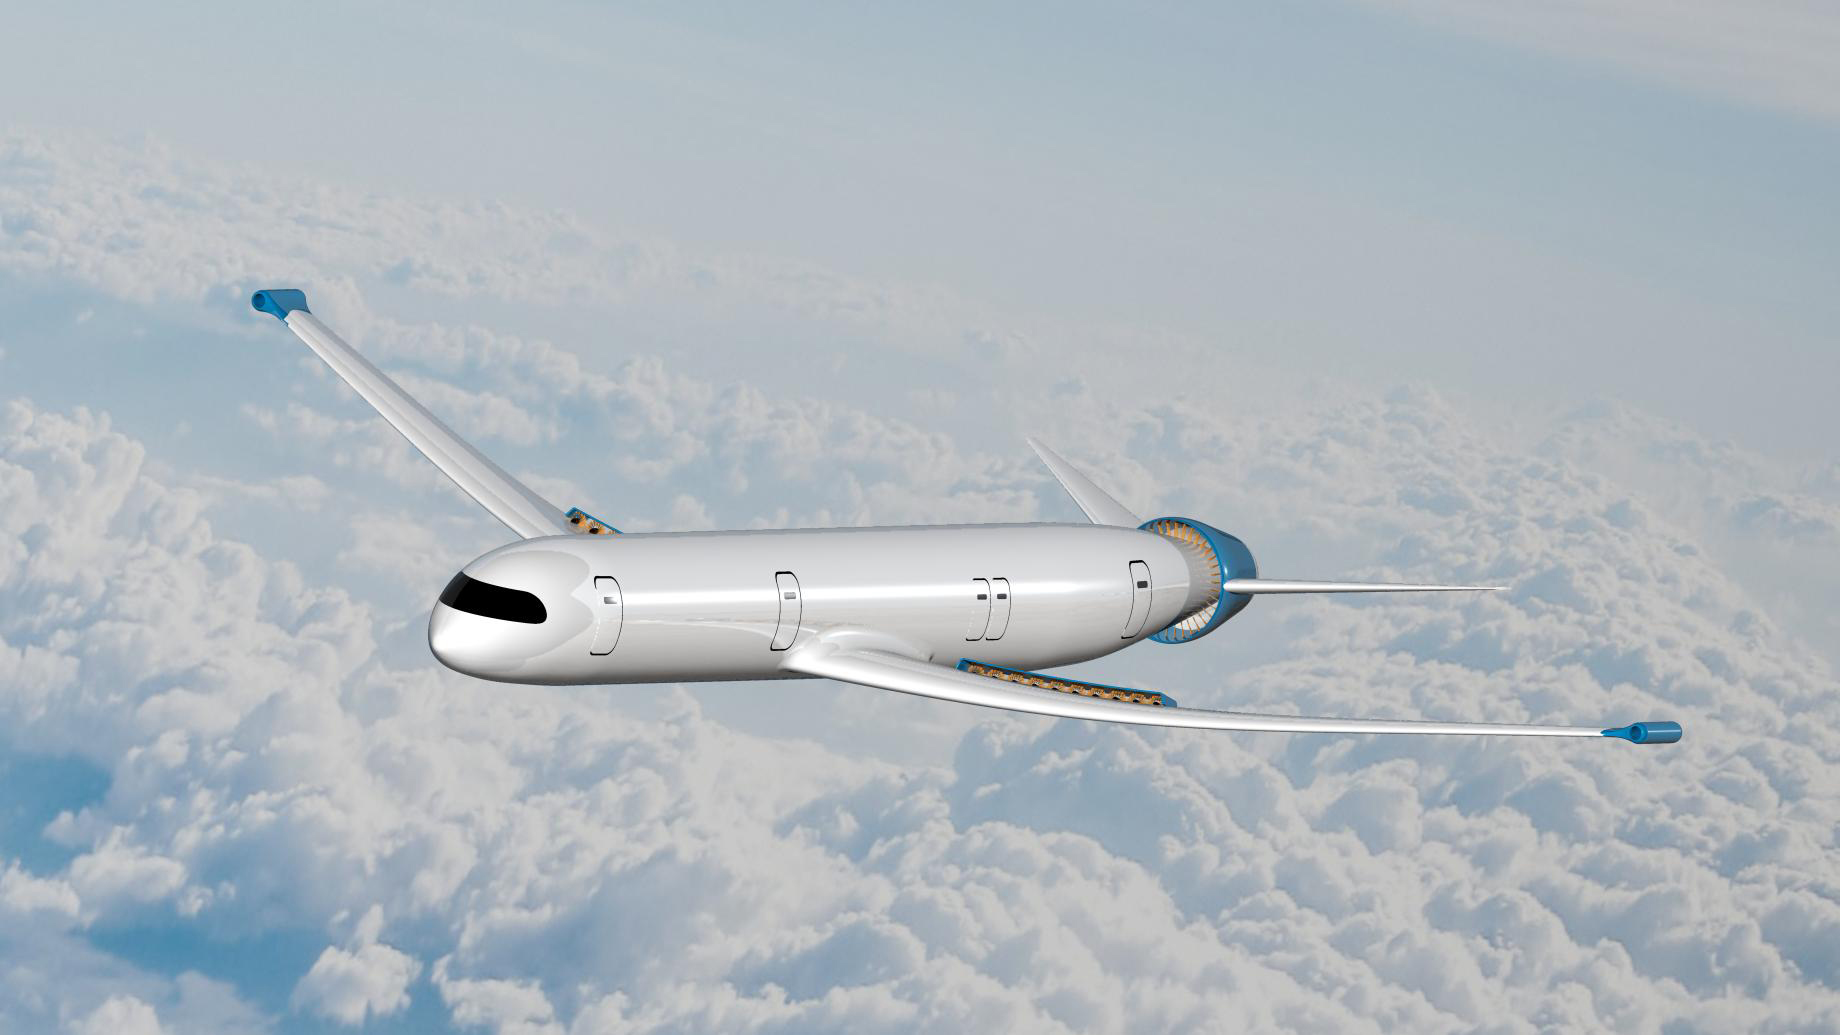 Mit dem "eRay" kreierte das siegreiche Team der TUM ein ultraeffizientes Flugzeug. (Bild: DLR, CC-BY 3.0)